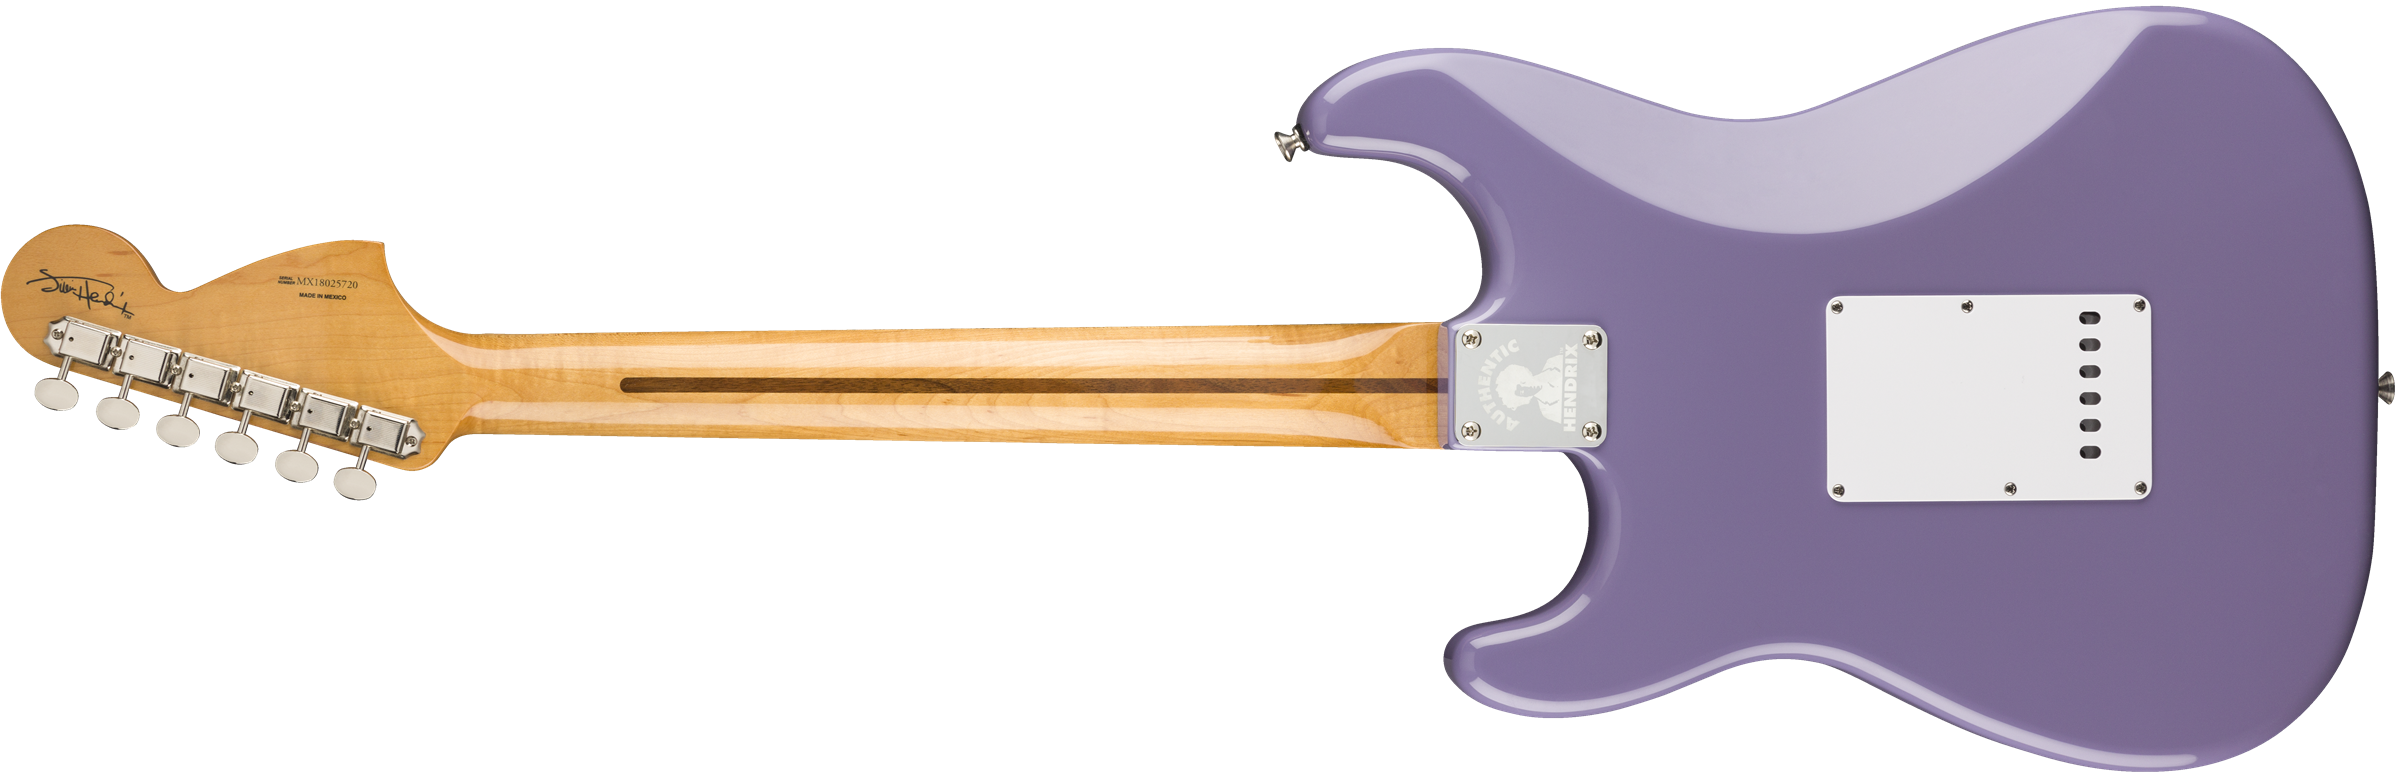 Fender Jimi Hendrix Strat Signature 2018 Mn - Ultra Violet - Str shape electric guitar - Variation 1